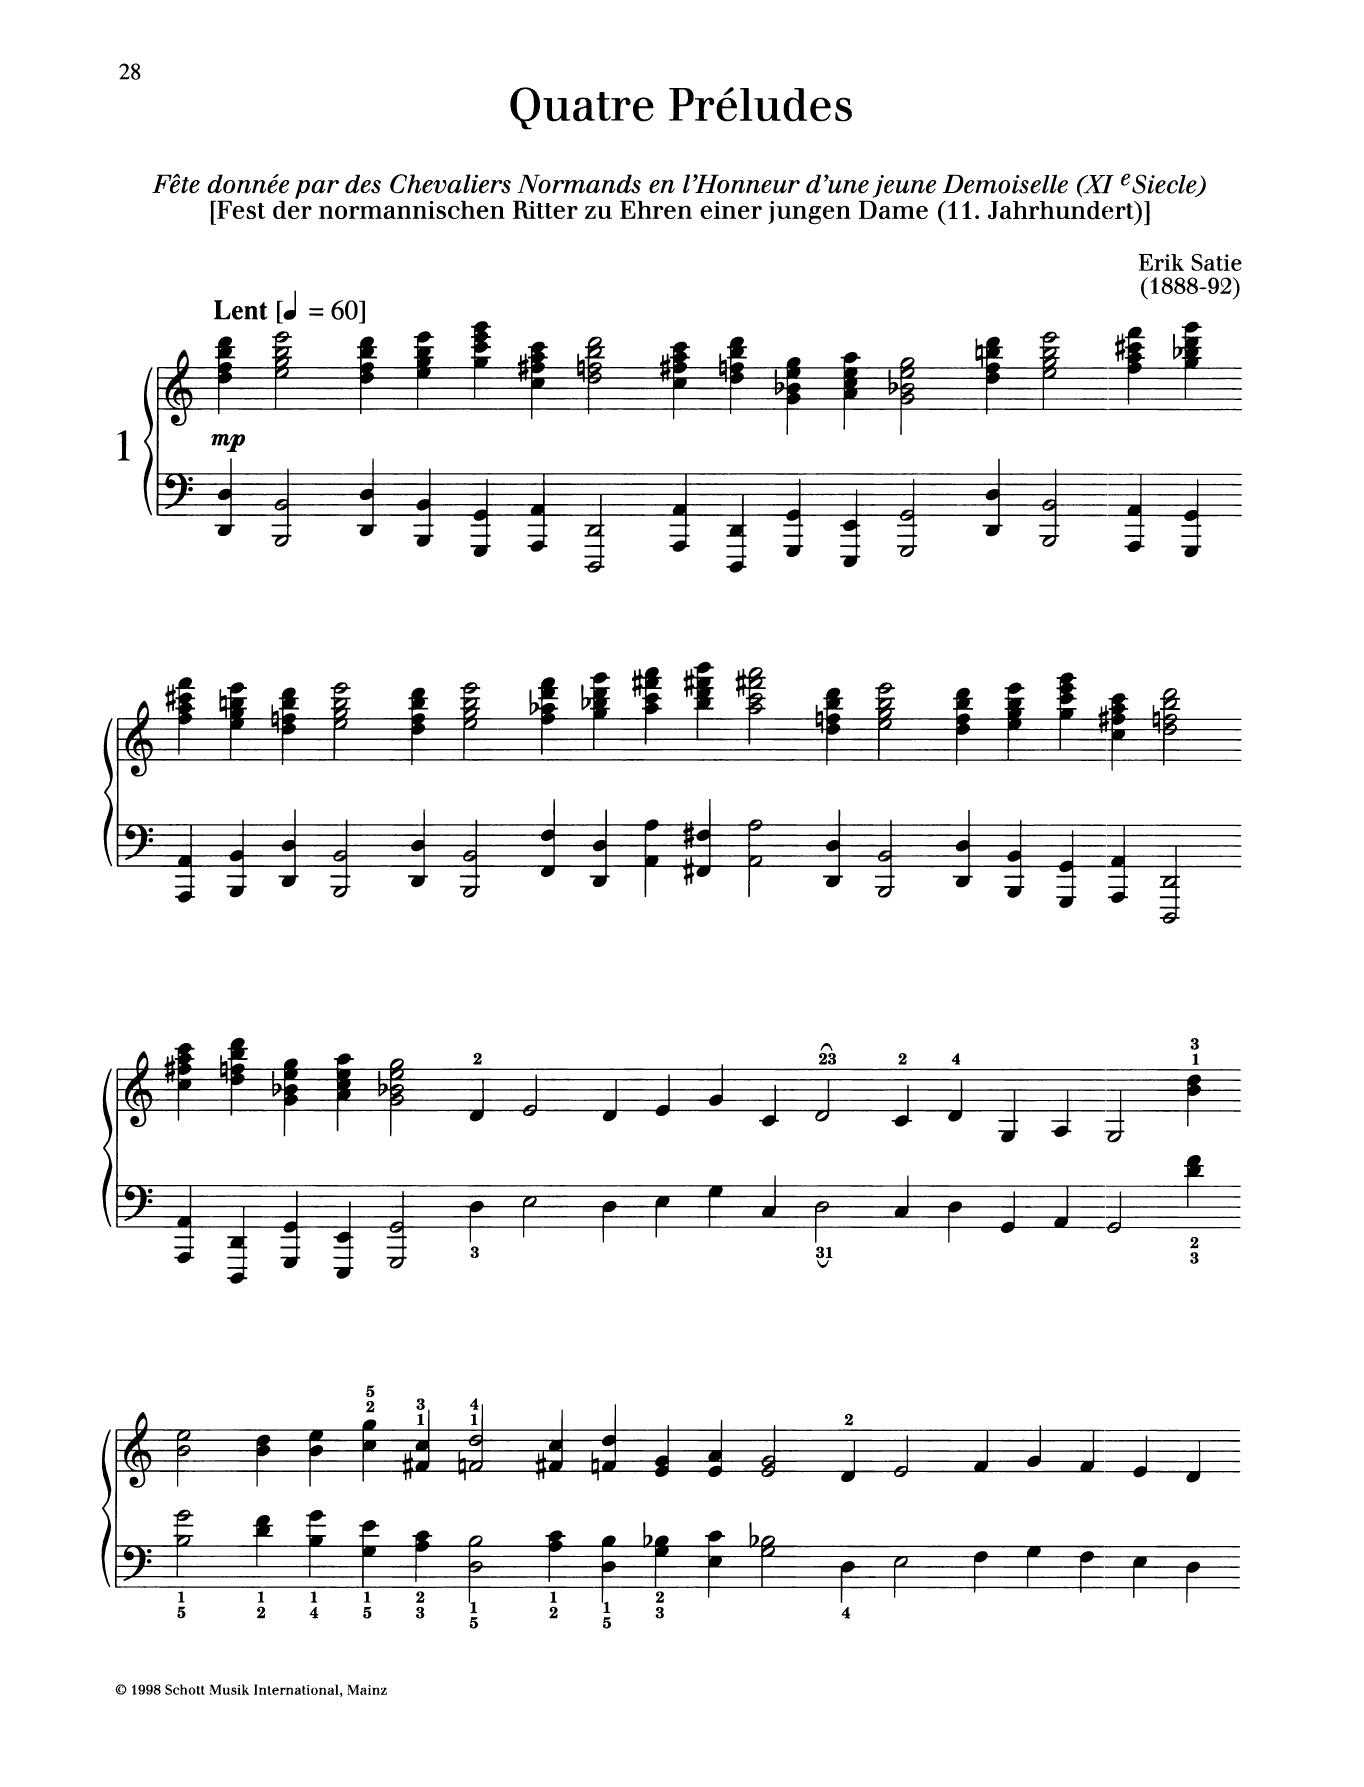 Download Erik Satie Fete donnee par des Chevaliers Normands en l'Honneur d'une jeune Demoiselle Sheet Music and learn how to play Piano Solo PDF digital score in minutes